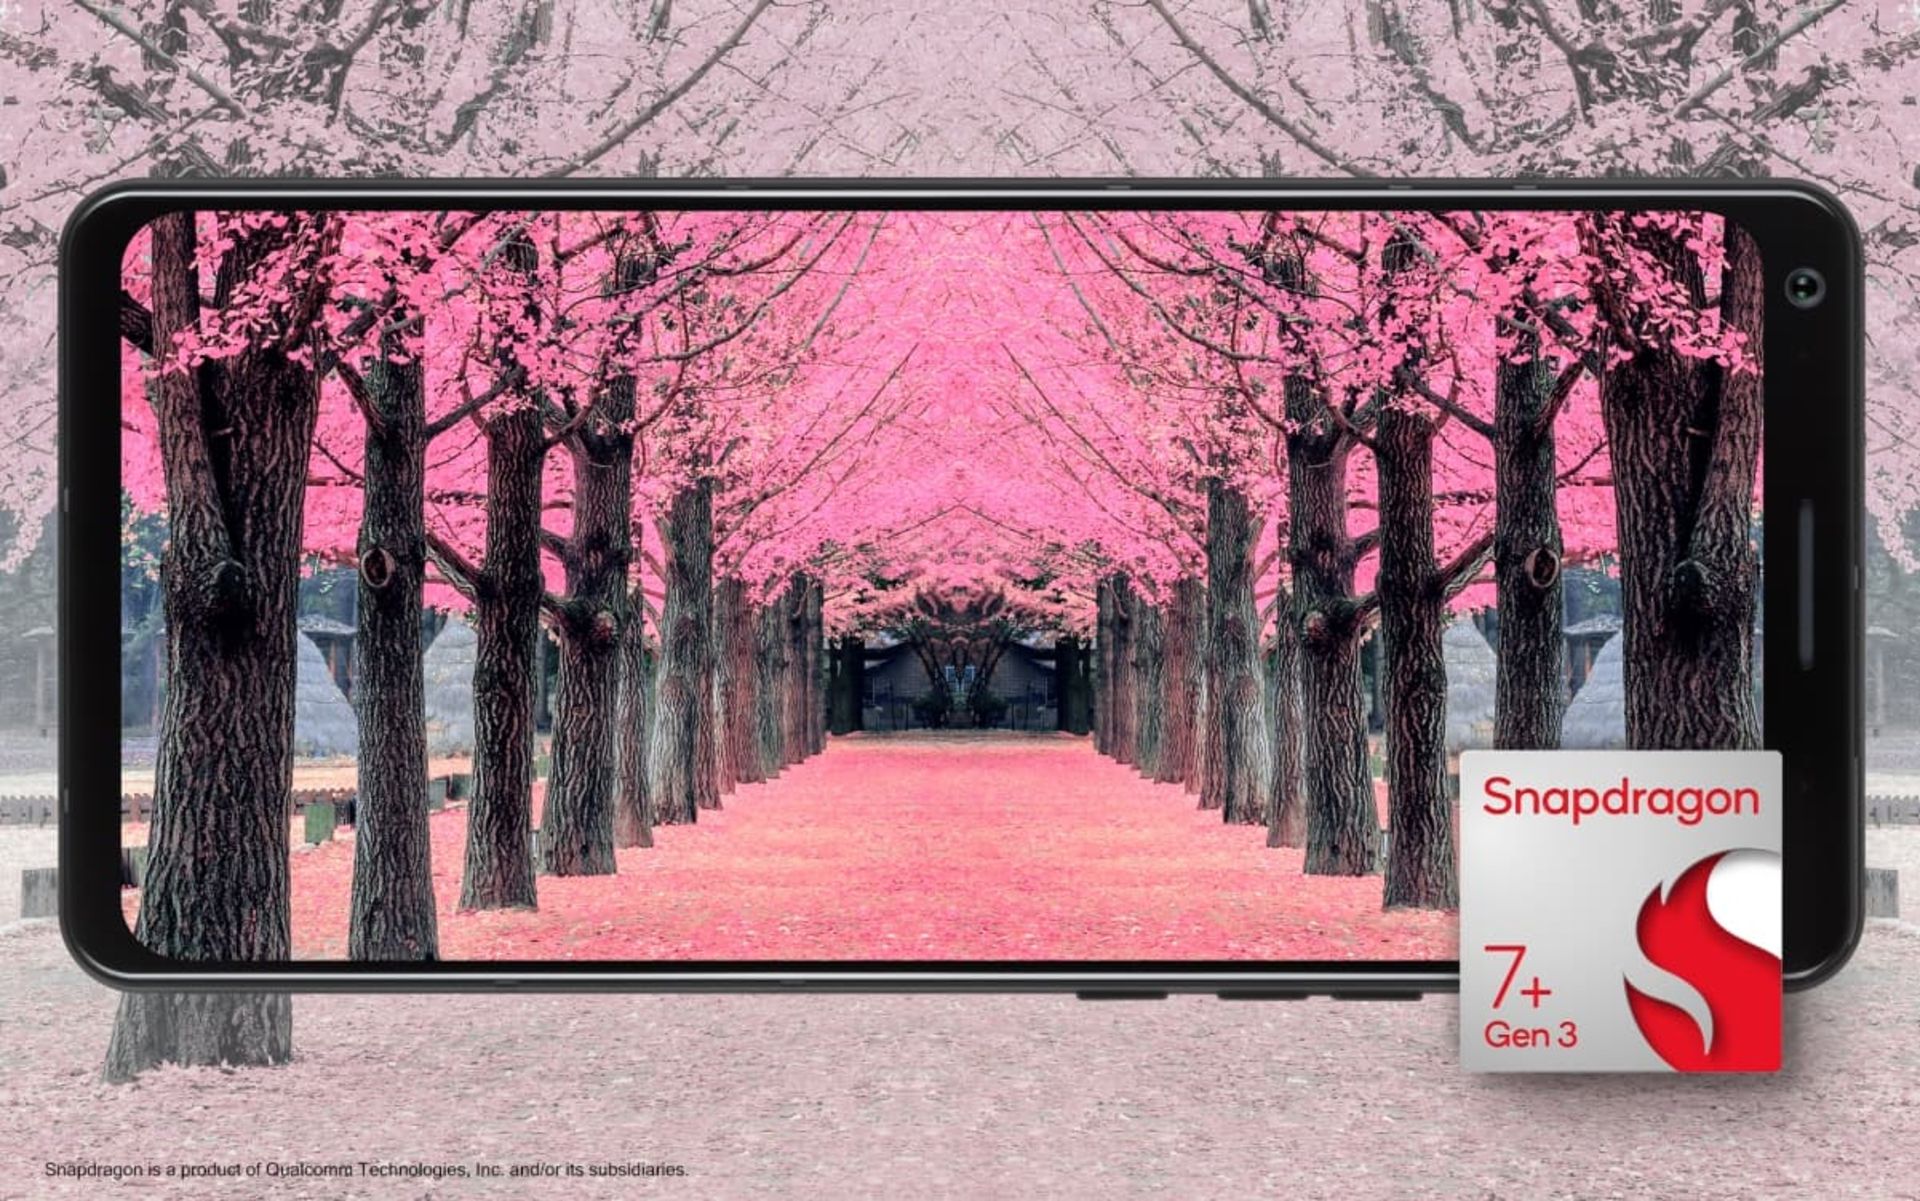 درختان صورتی در داخل نمایشگر گوشی با پردازنده اسنپدراگون ۷ پلاس نسل ۳ / Snapdragon 7+ Gen 3